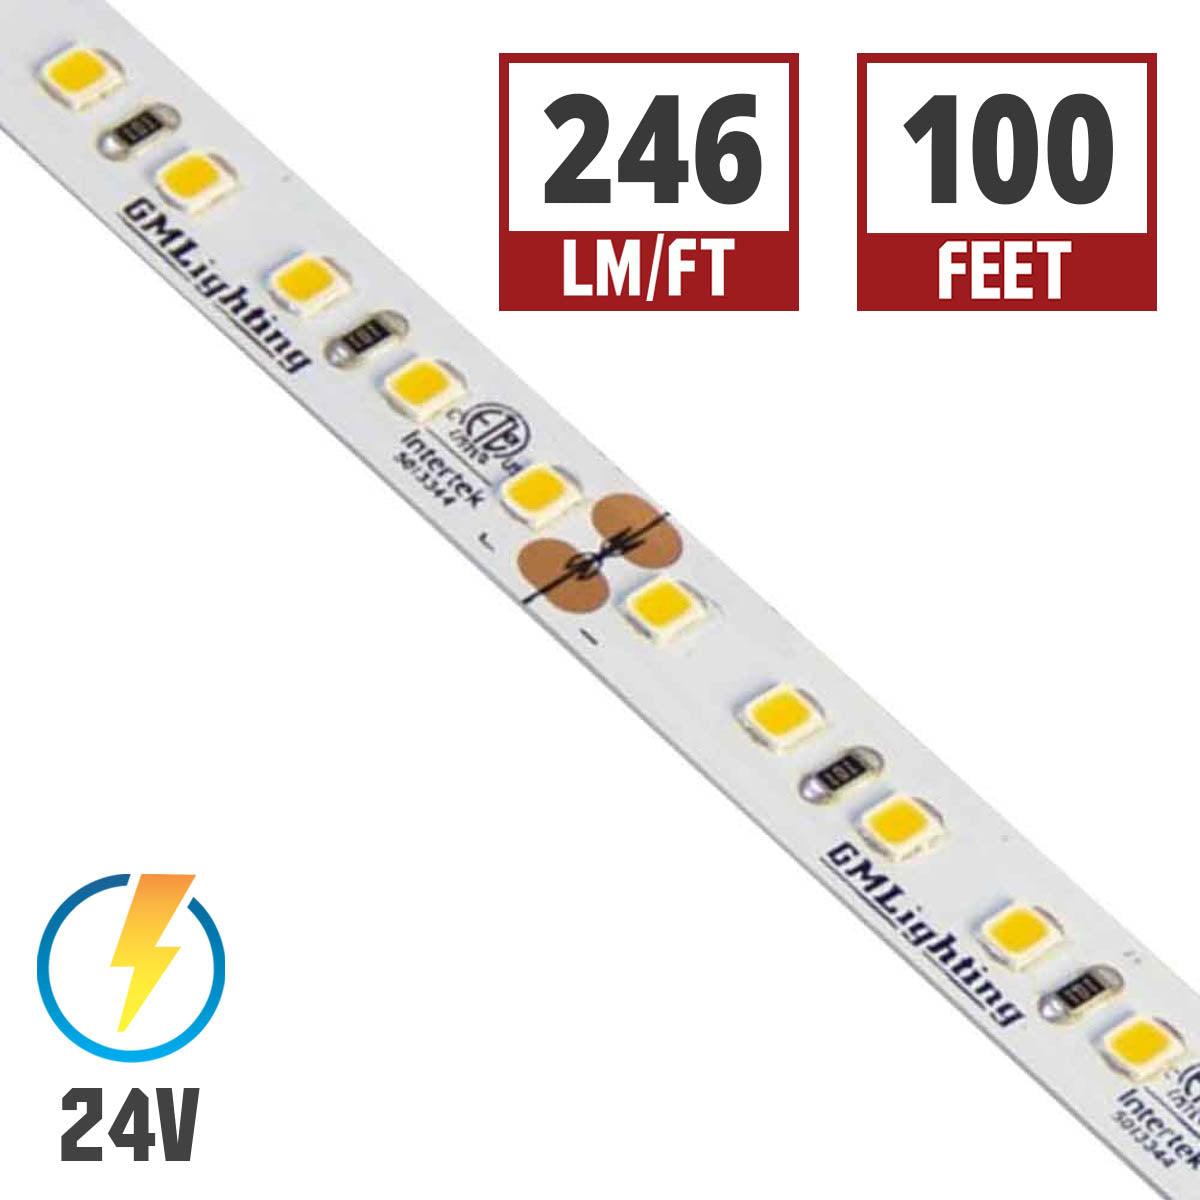 LTR-P Pro LED Strip Light, 3.0W / ft, 240 Lumens per Ft, 24V